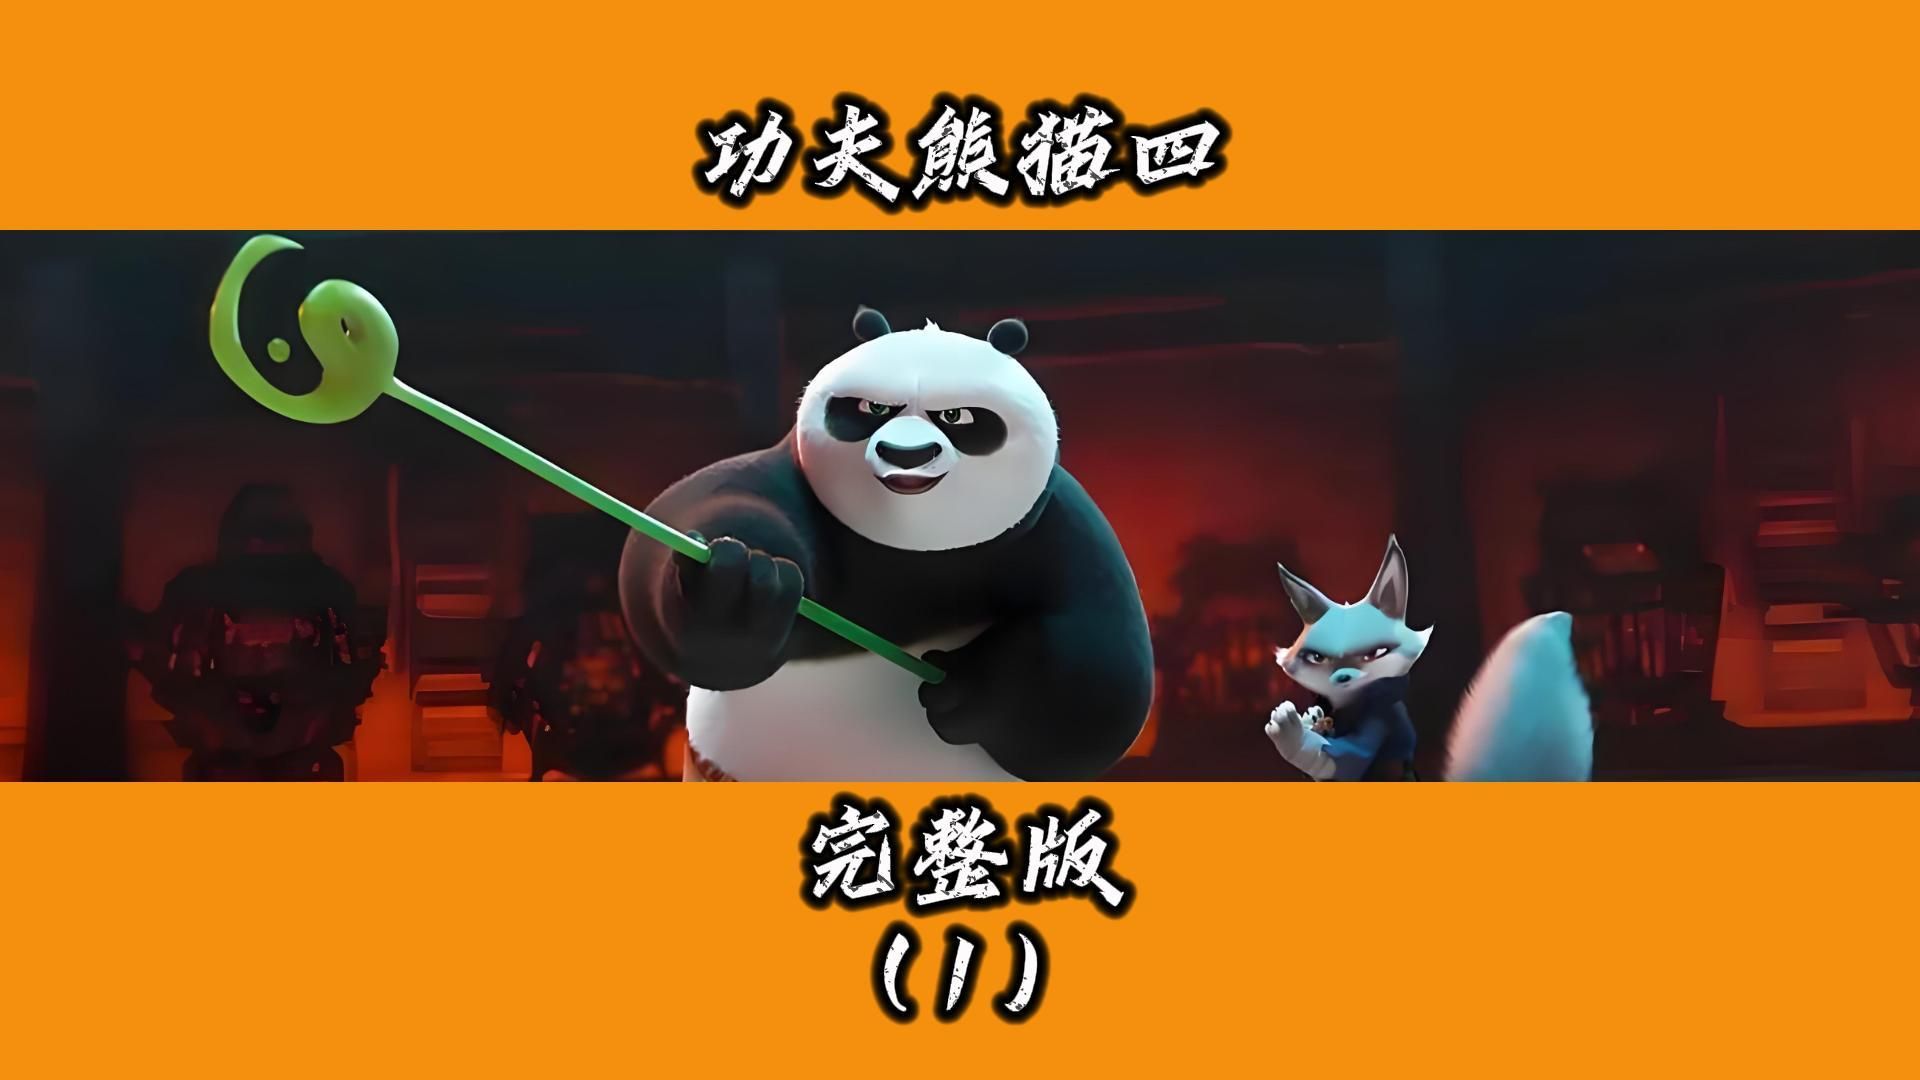 功夫熊猫第四部丨熊猫阿宝带领徒弟拯救世界，套路满满，但笑点依旧